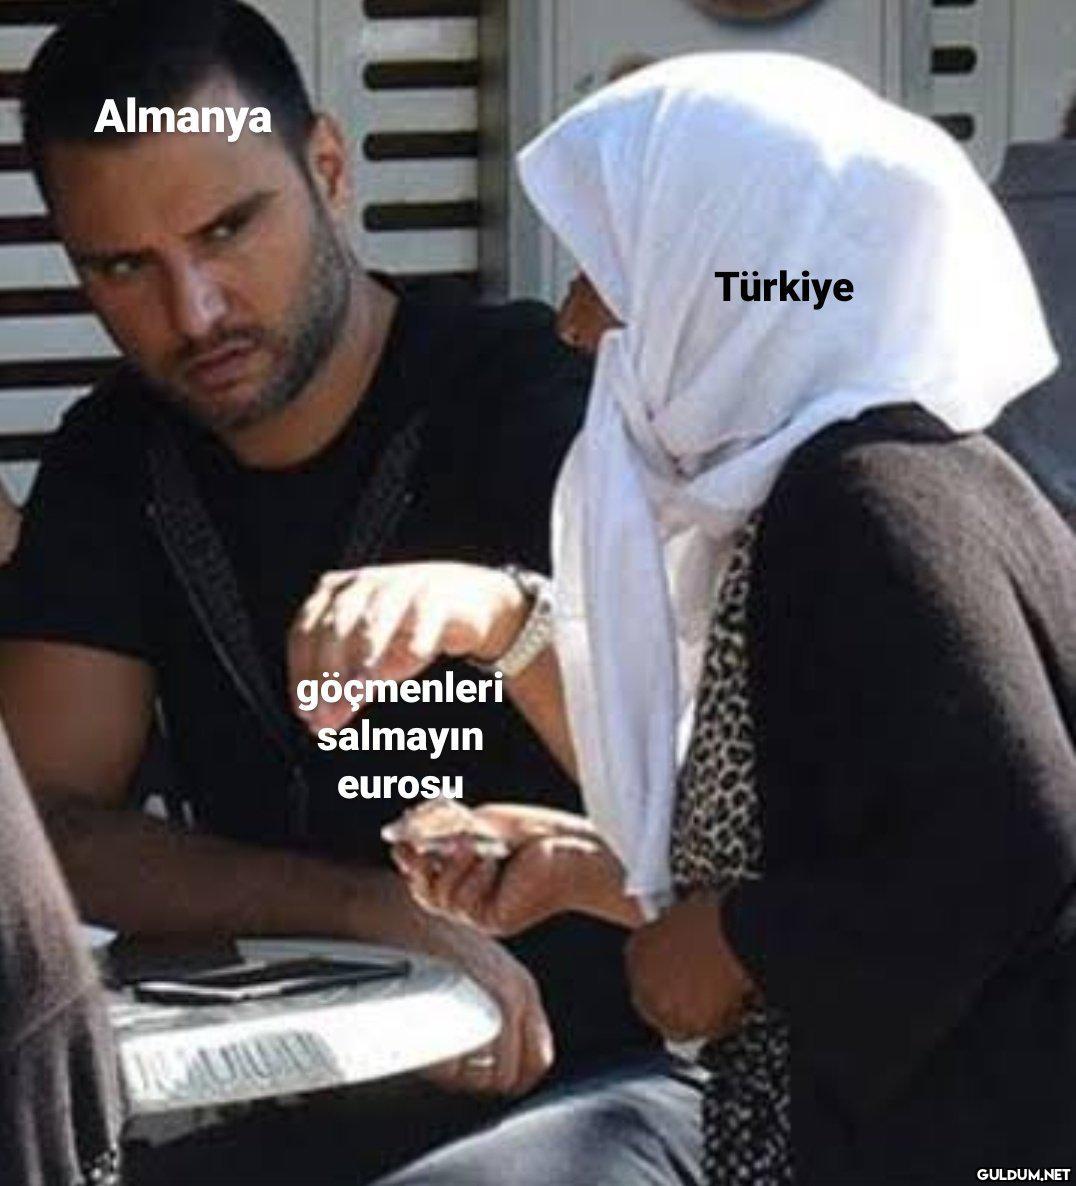 Almanya Türkiye göçmenleri...